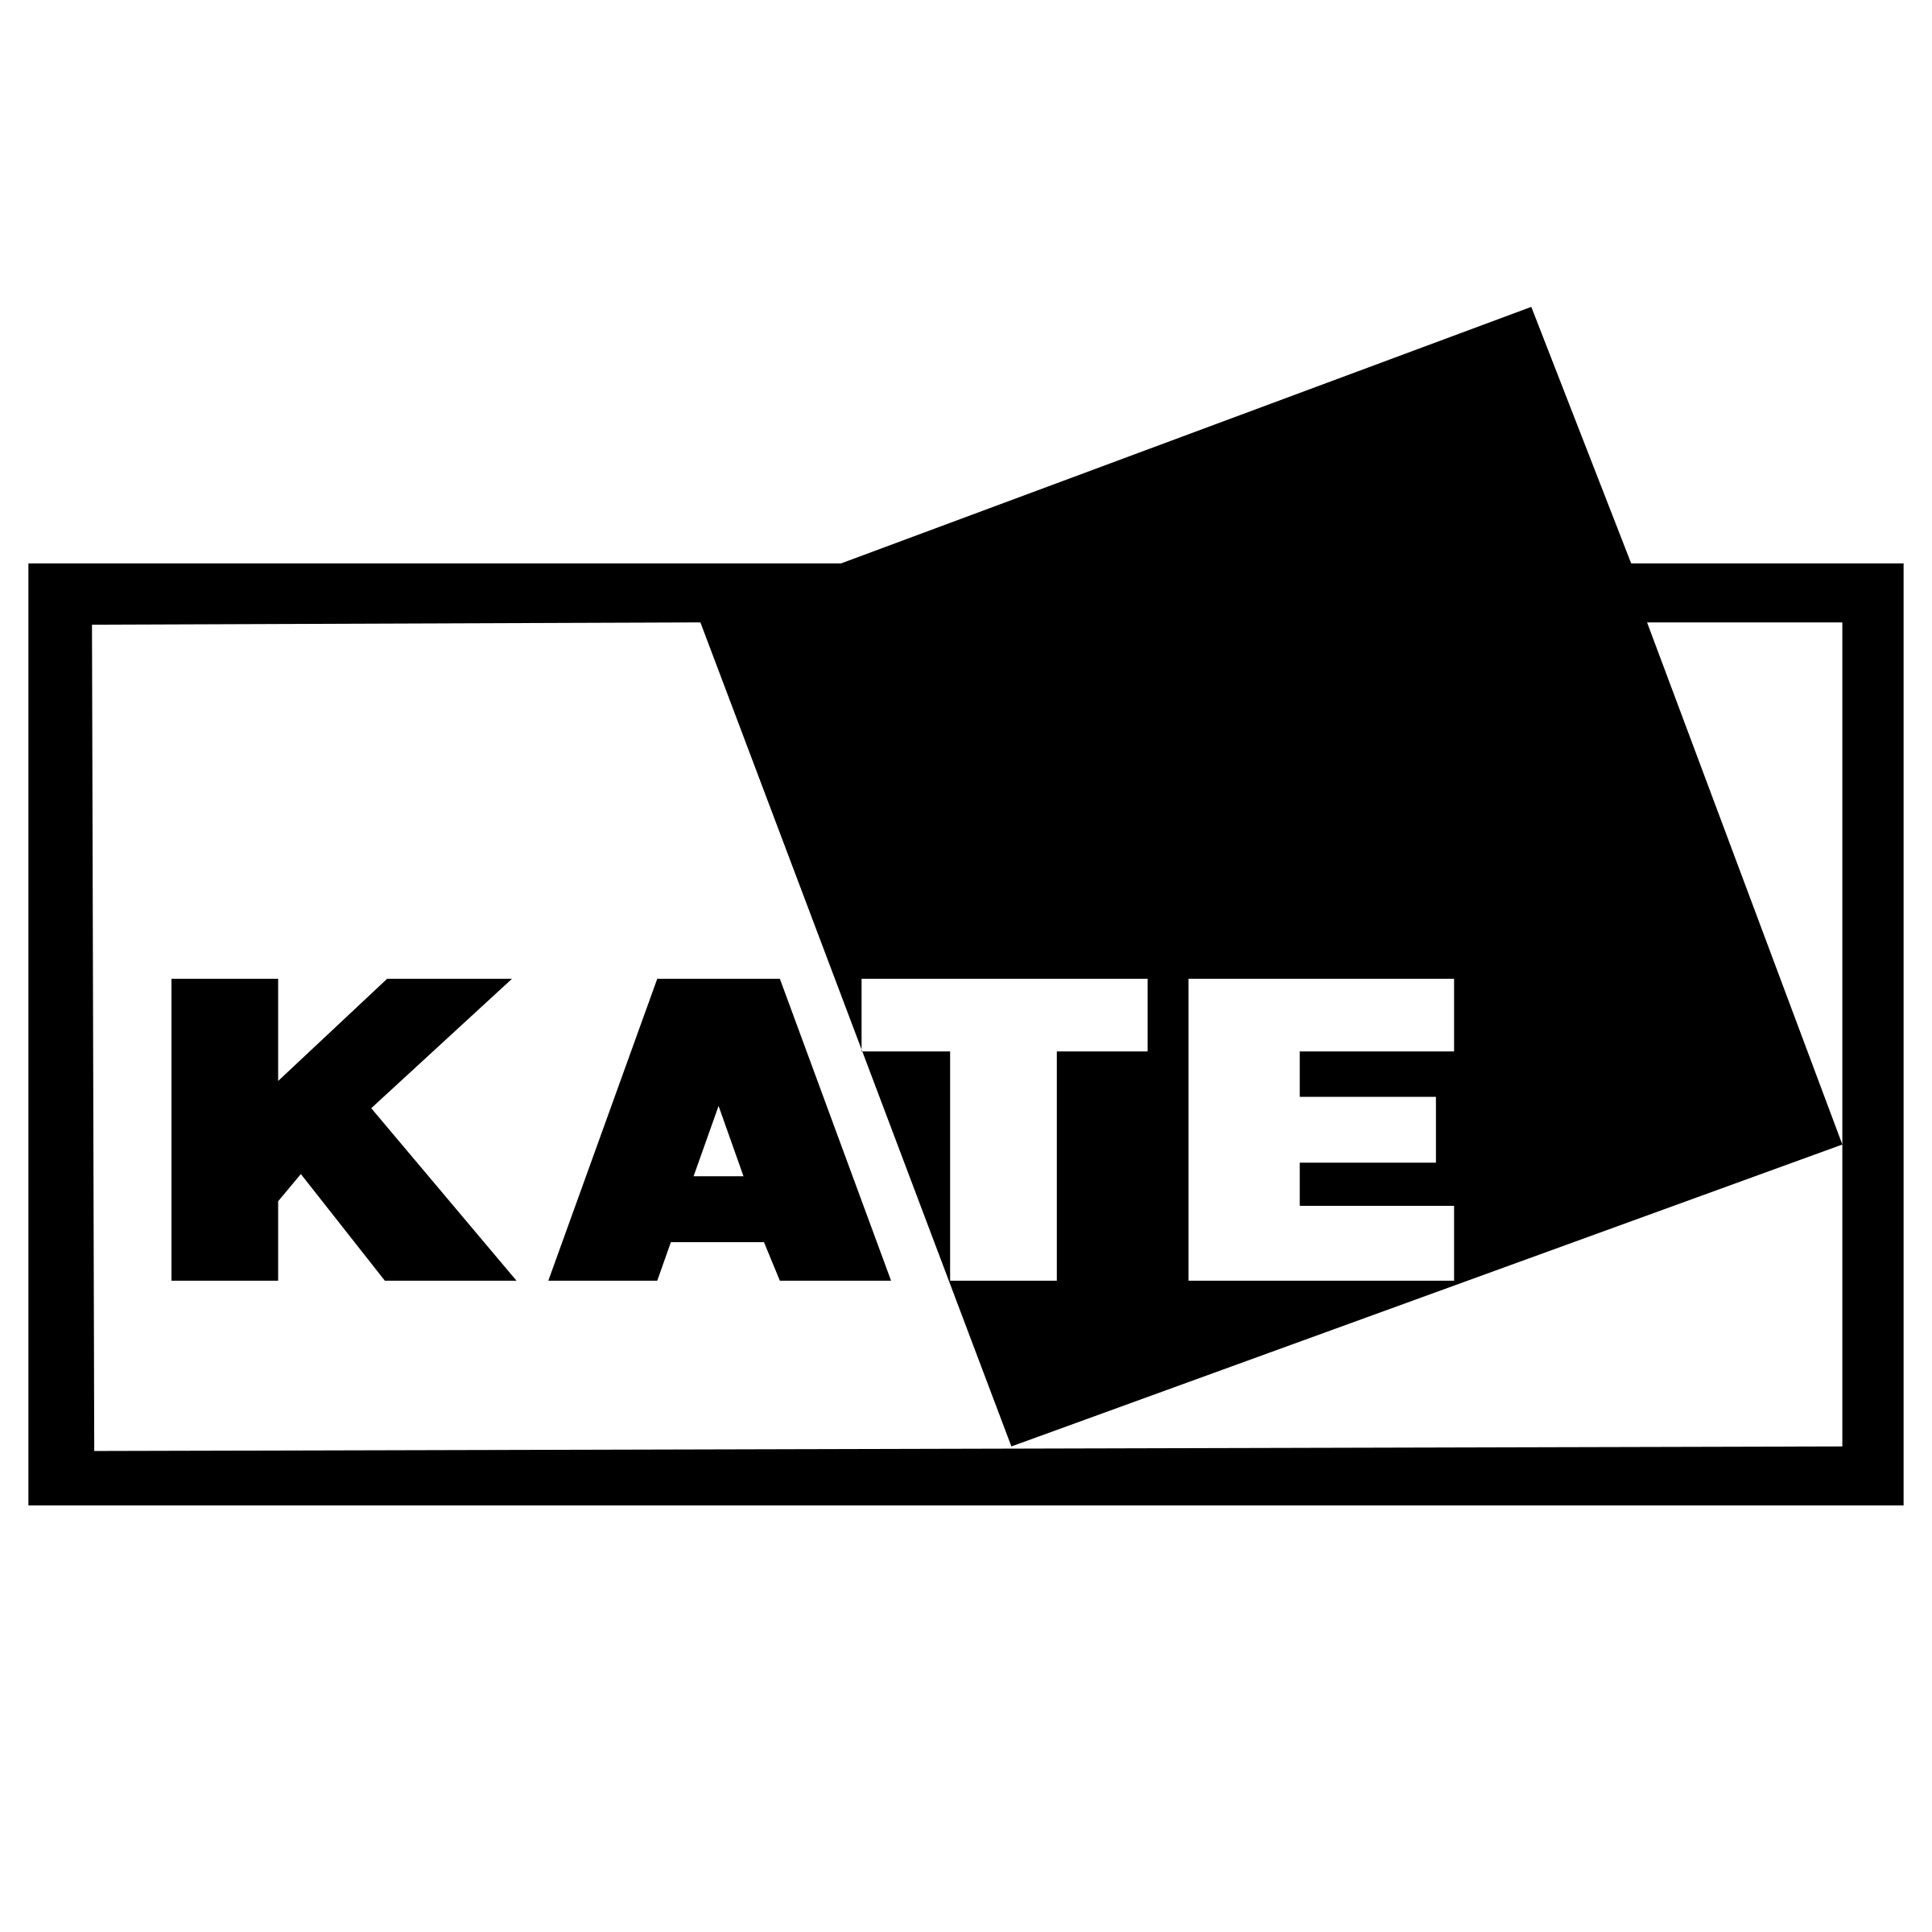 Kate Logo - Kate Logo PNG Transparent & SVG Vector